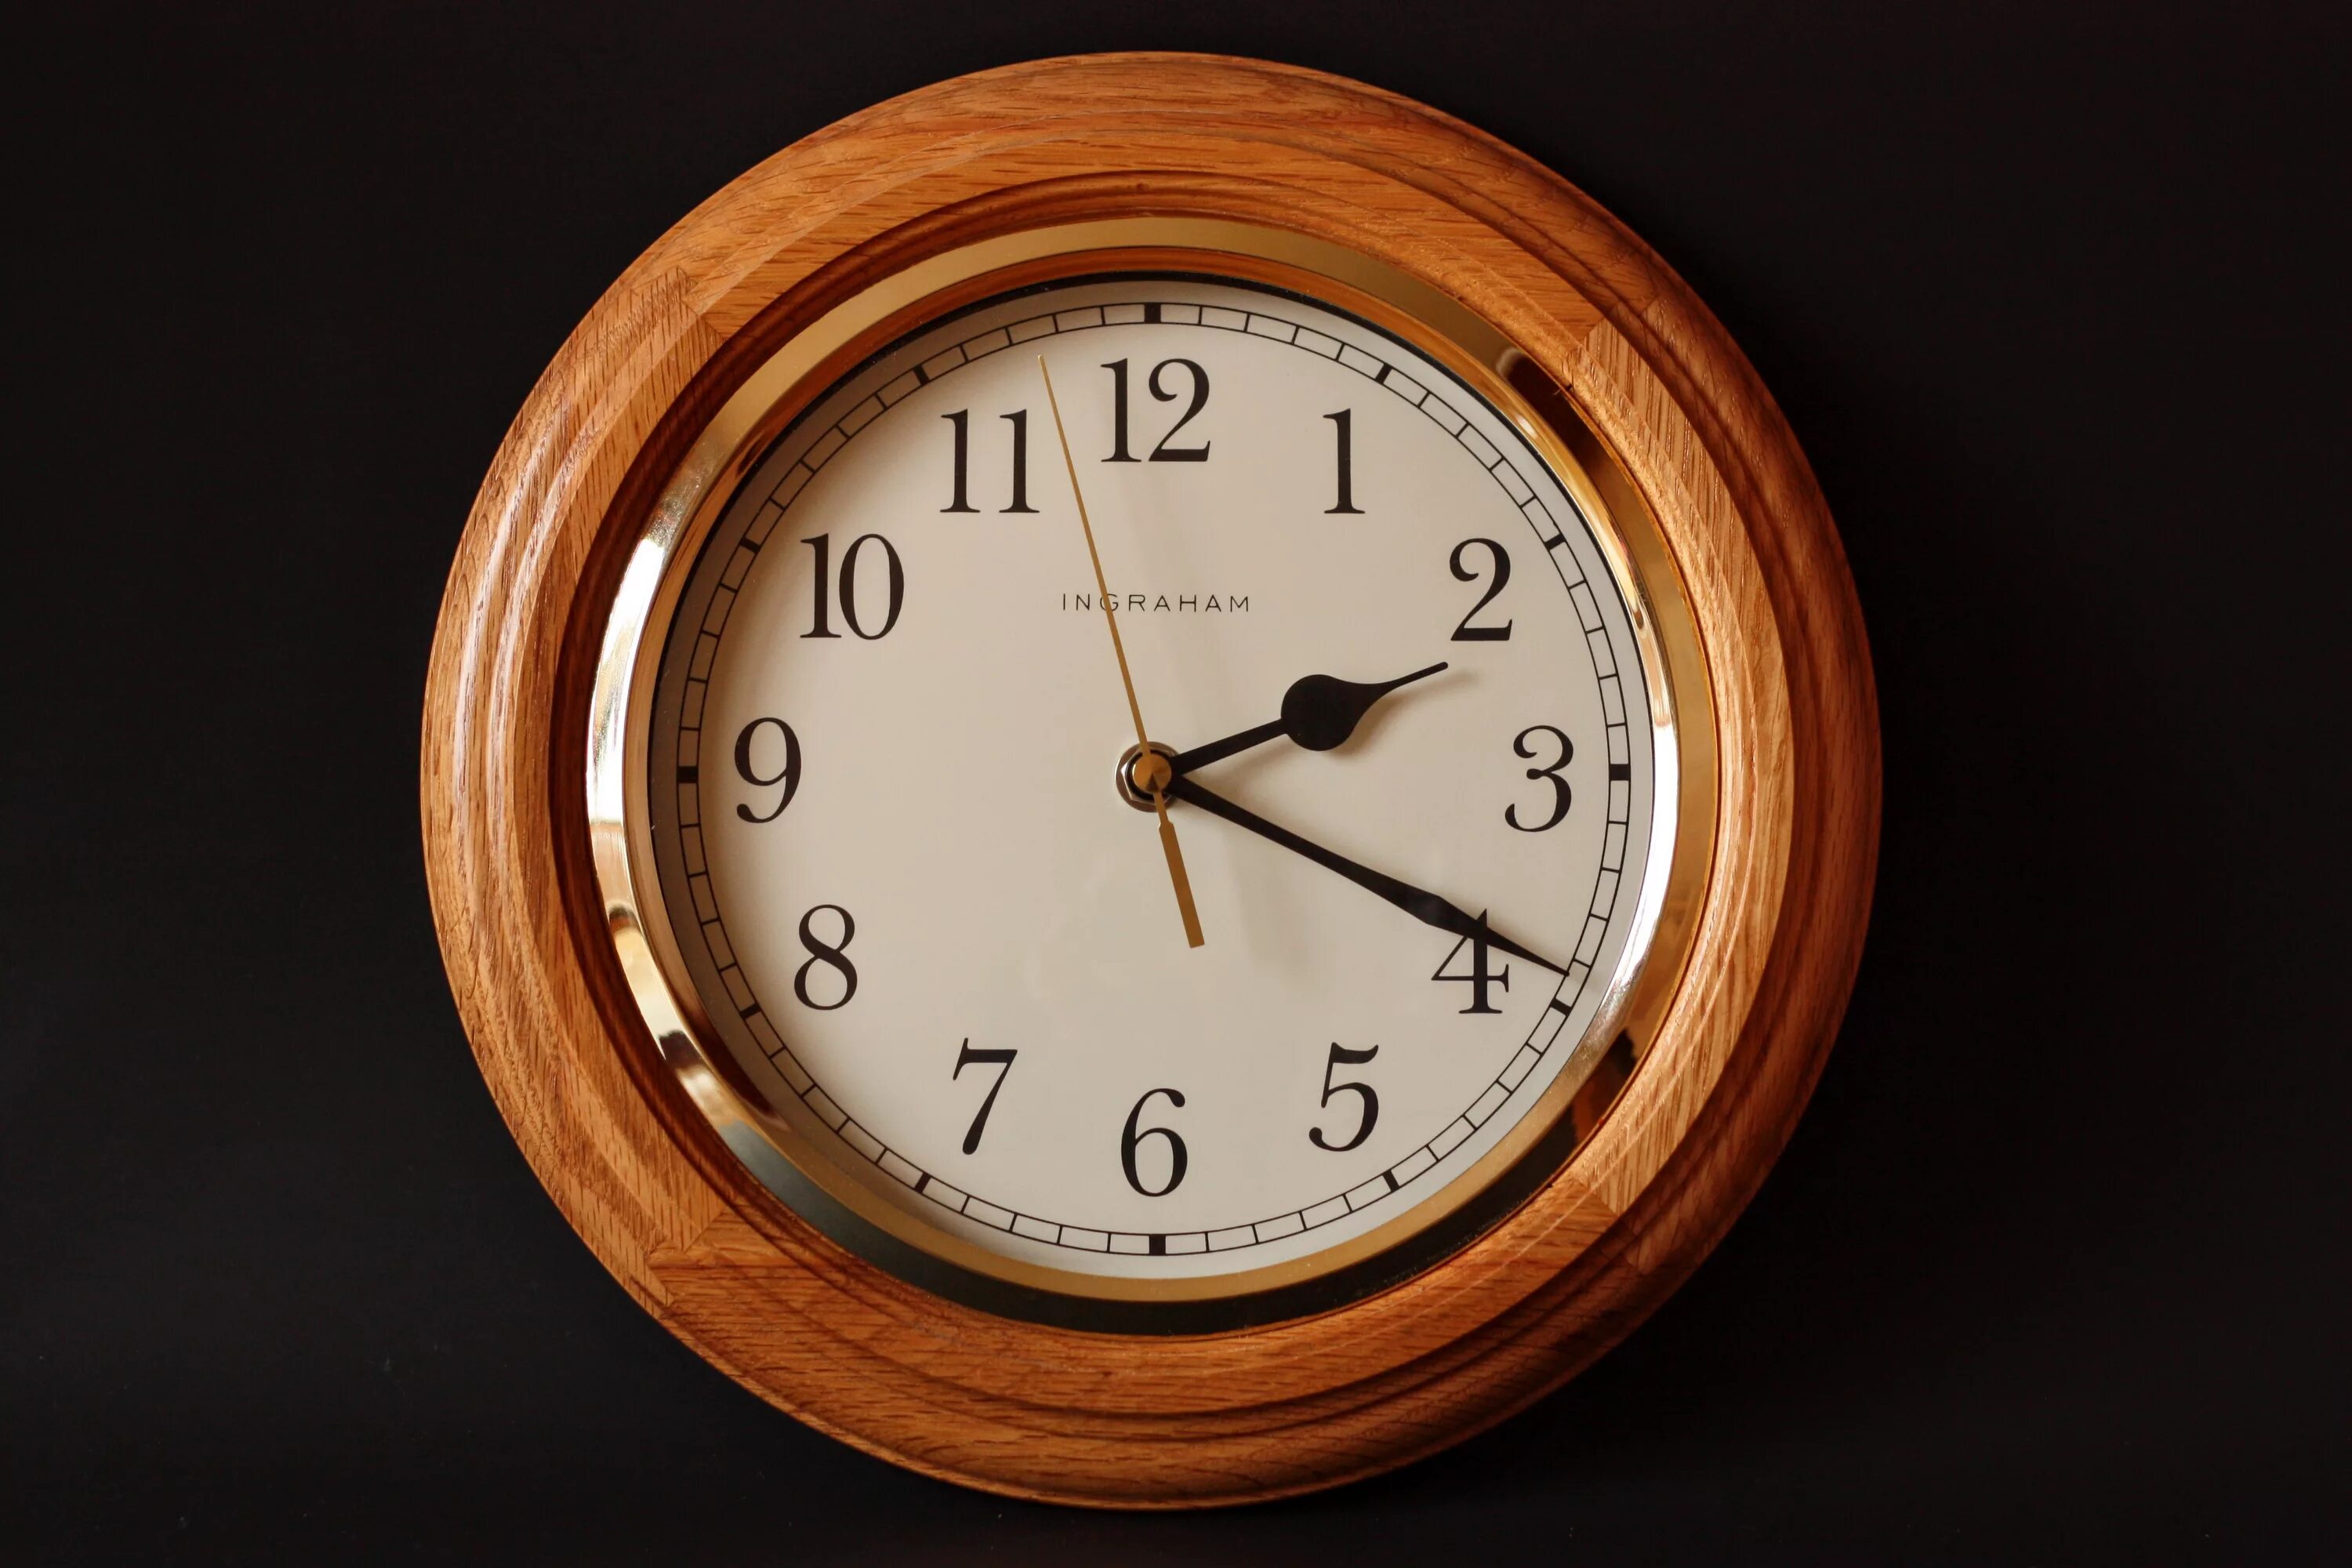 Westminster Chime часы Quartz. Часы механические настенные. Часы настенные деревянные. Часы классика. Время 14 июля